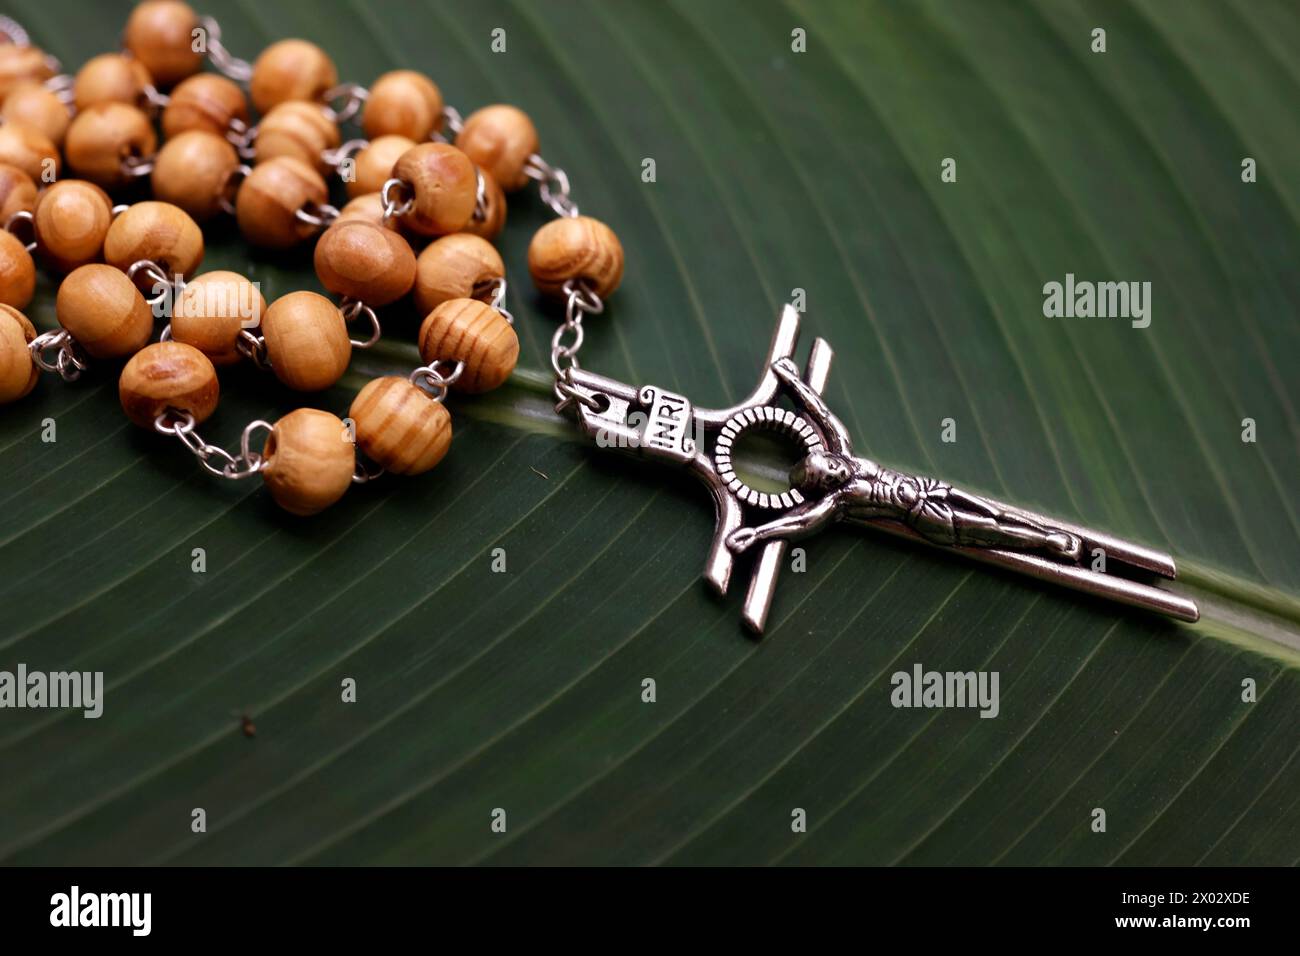 Rosaire (perles de prière) sur une feuille verte, et Jésus sur la Croix (crucifix), Cambodge, Indochine, Asie du Sud-est, Asie Banque D'Images